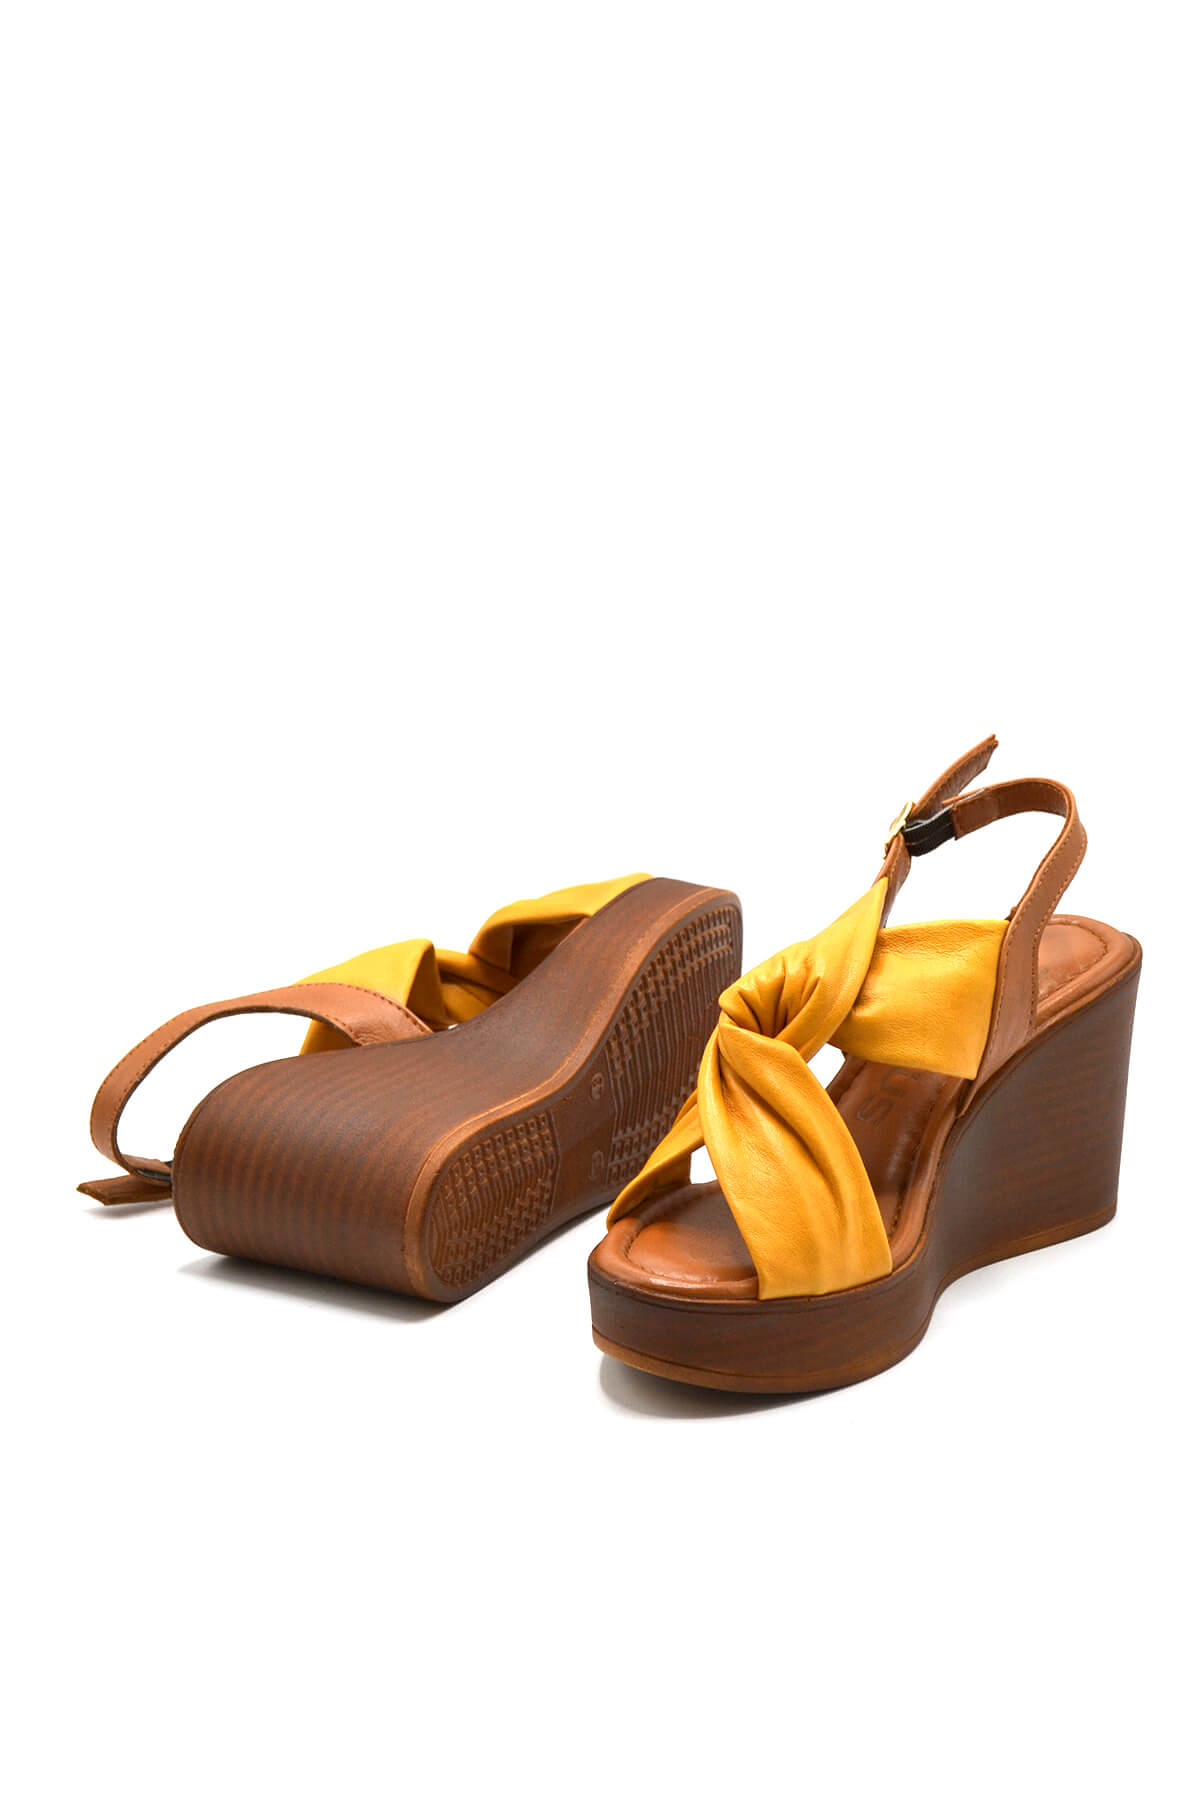 Kadın Dolgu Topuk Deri Sandalet Sarı 2310803Y - Thumbnail